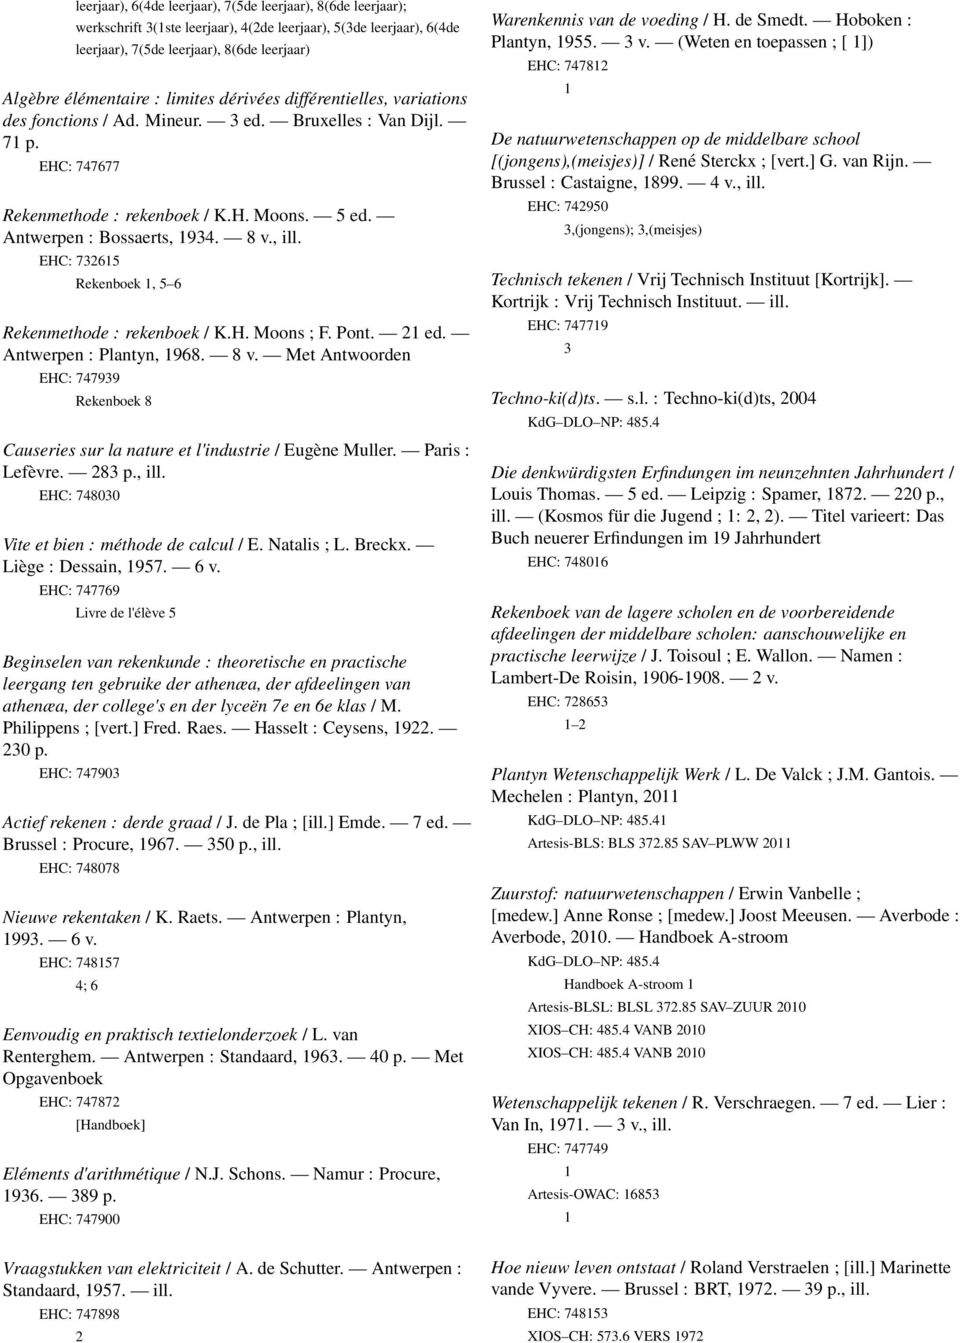 , ill. EHC: 732615 Rekenboek 1, 5 6 Rekenmethode : rekenboek / K.H. Moons ; F. Pont. 21 ed. Antwerpen : Plantyn, 1968. 8 v.